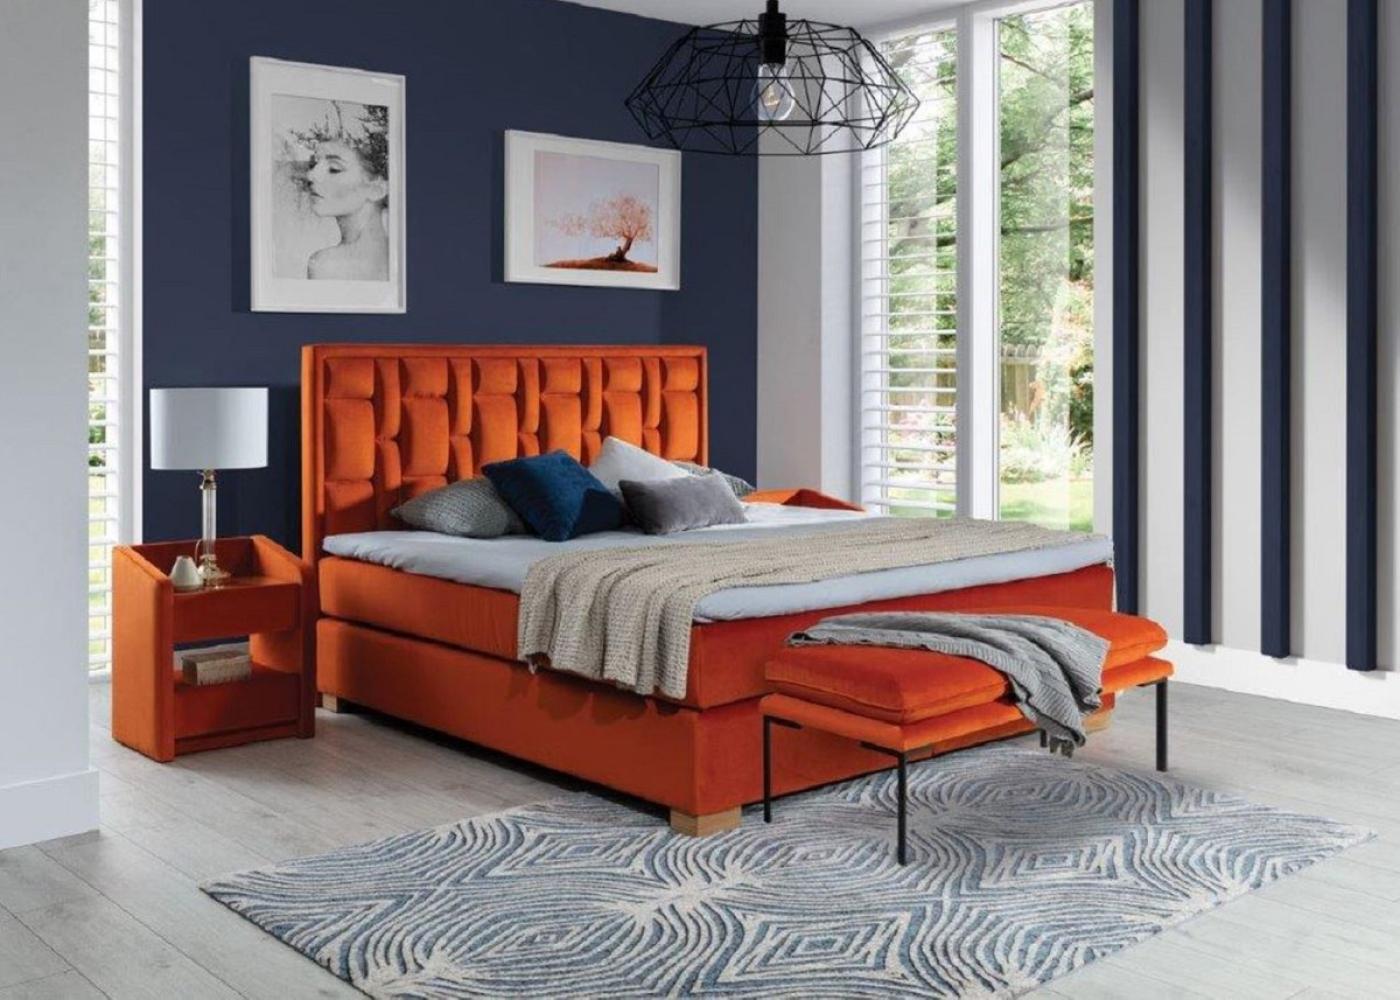 Casa Padrino Luxus Doppelbett Orange / Naturfarben - Verschiedene Größen - Modernes Massivholz Bett mit Kopfteil - Moderne Schlafzimmer Möbel - Luxus Kollektion Bild 1